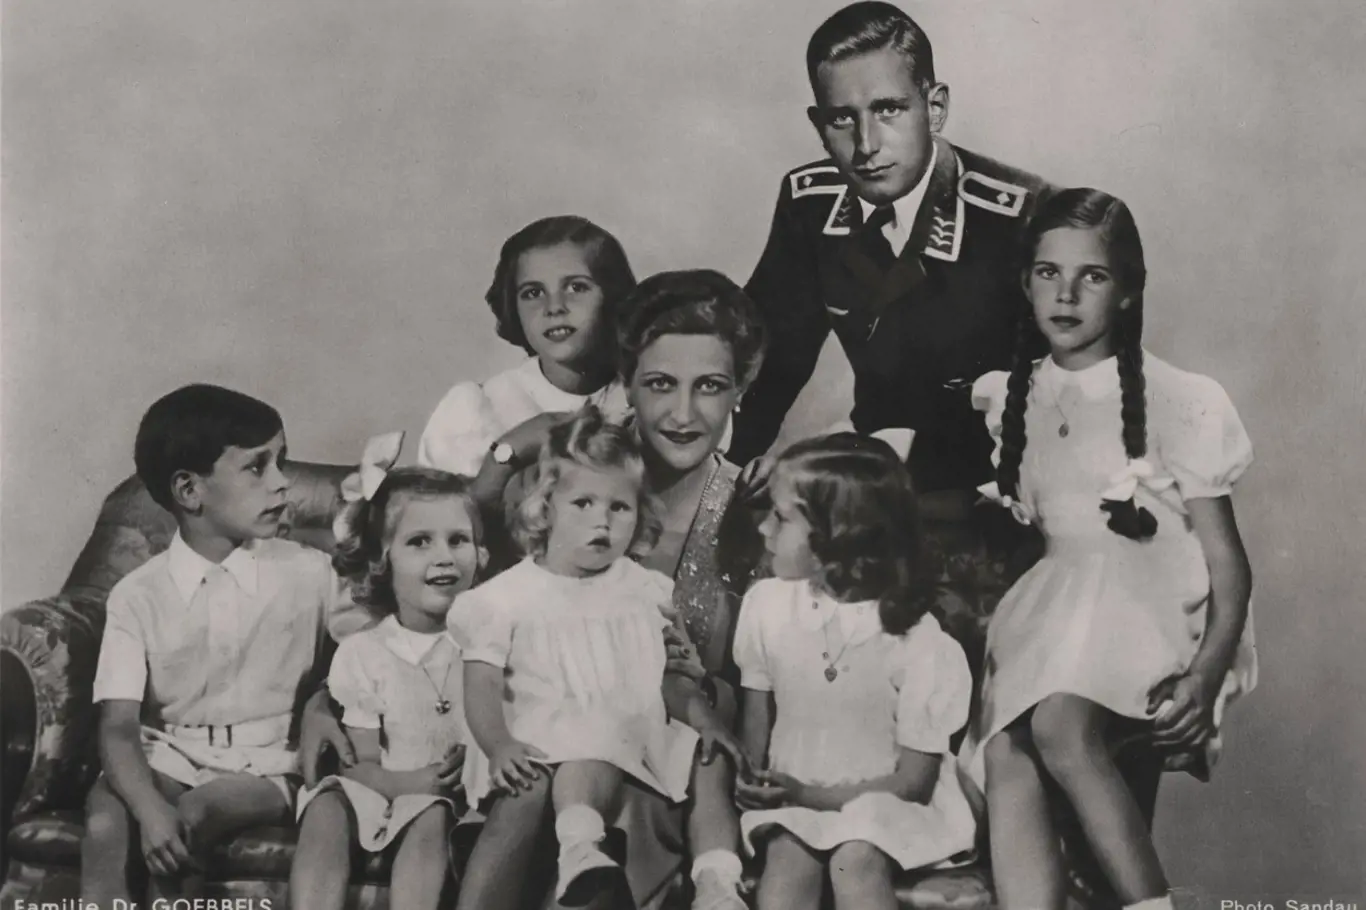 Život Magdy Goebbelsové připomíná antickou tragédii: Než aby její děti zažily plápolat rudou vlajku, raději je zabije.